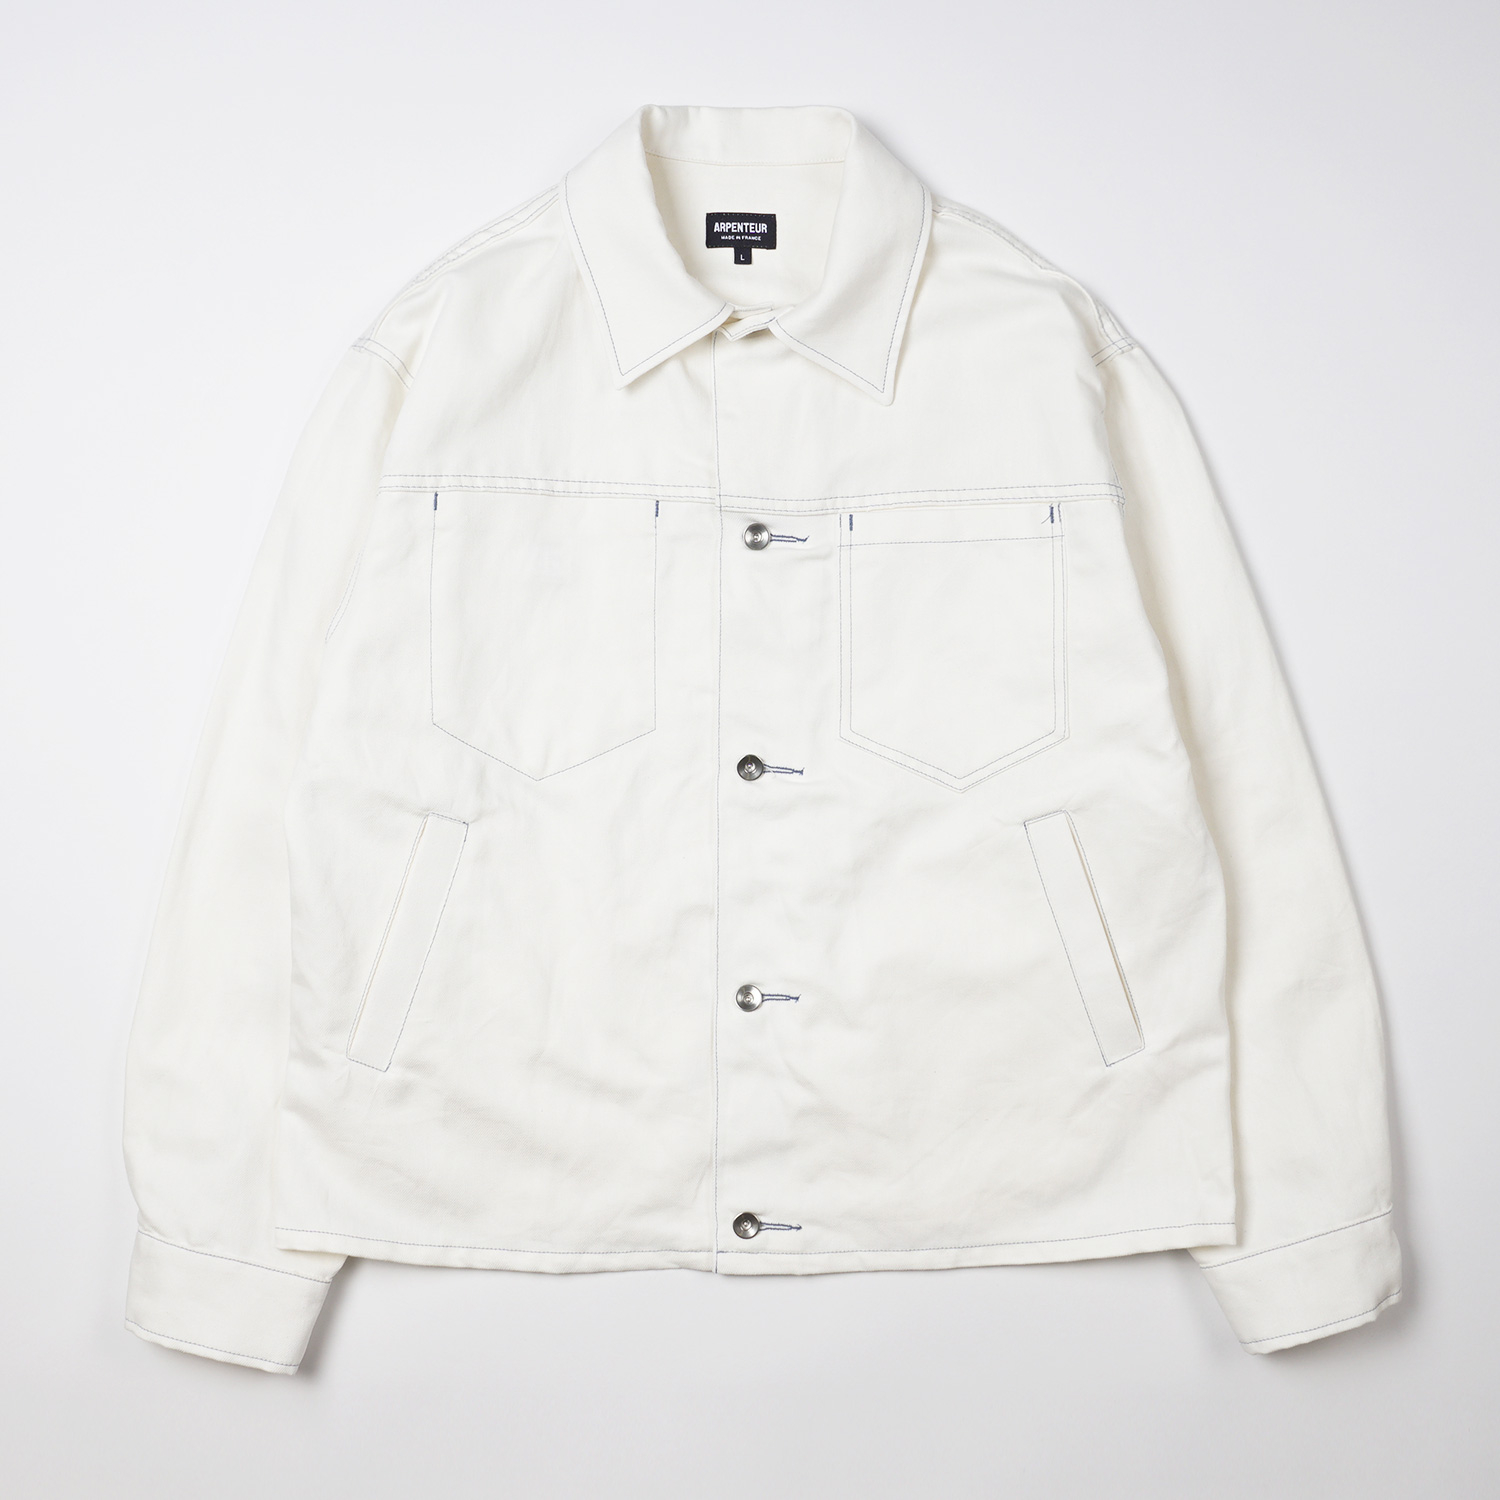 EDDIE jacket in White color by Arpenteur